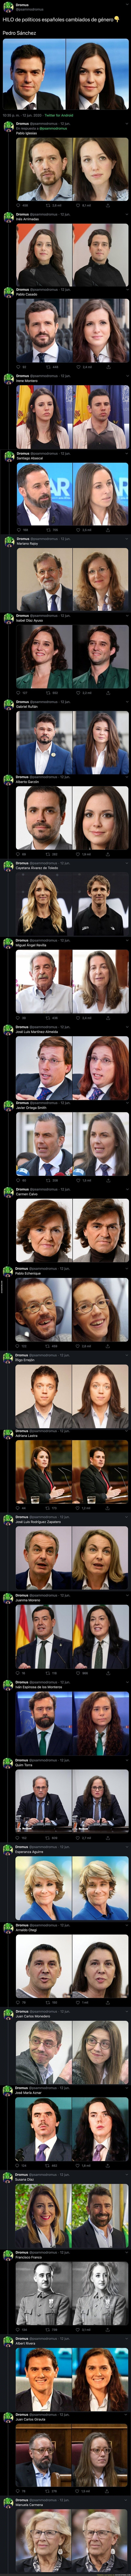 Este tuitero revoluciona internet subiendo las fotos de como sería la imagen de nuestros políticos con su género opuesto